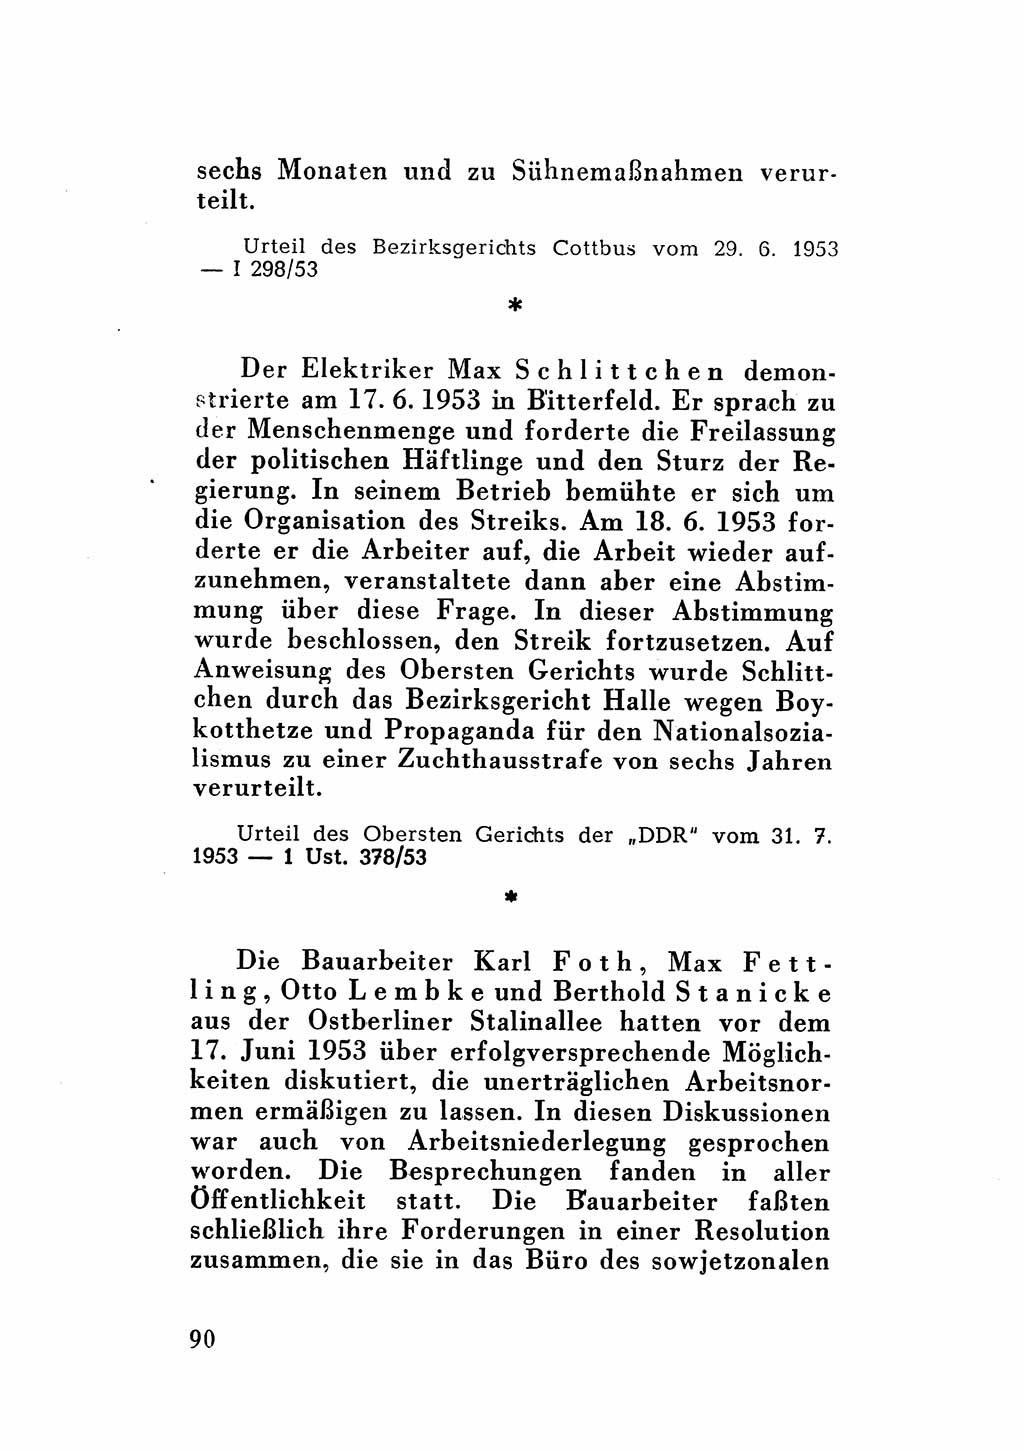 Katalog des Unrechts, Untersuchungsausschuß Freiheitlicher Juristen (UfJ) [Bundesrepublik Deutschland (BRD)] 1956, Seite 90 (Kat. UnR. UfJ BRD 1956, S. 90)